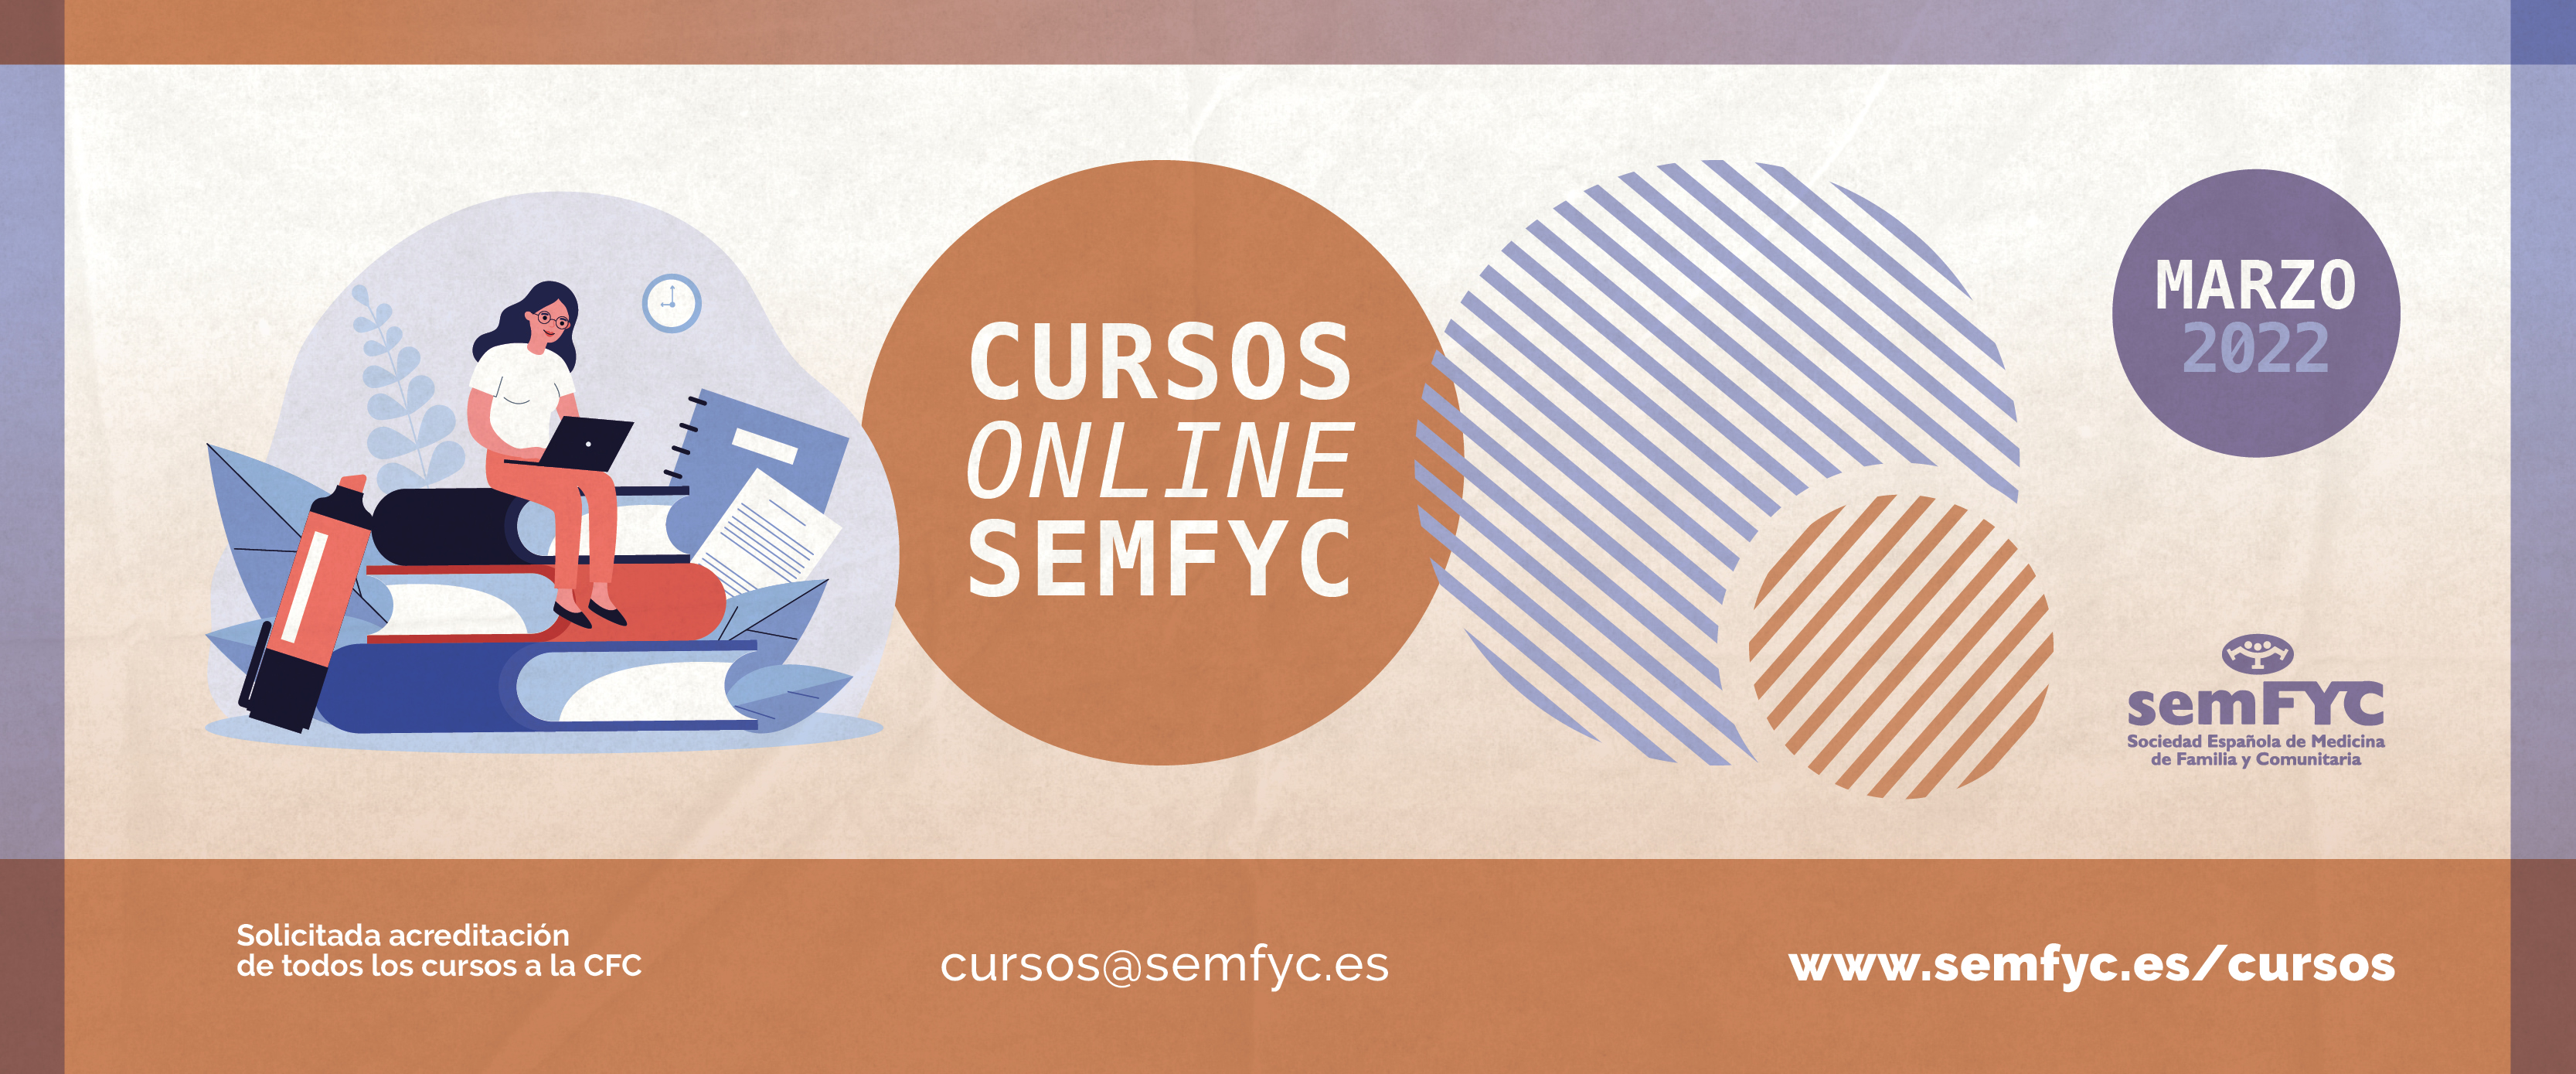 La semFYC inicia un nuevo ciclo formativo con programas para todos los intereses